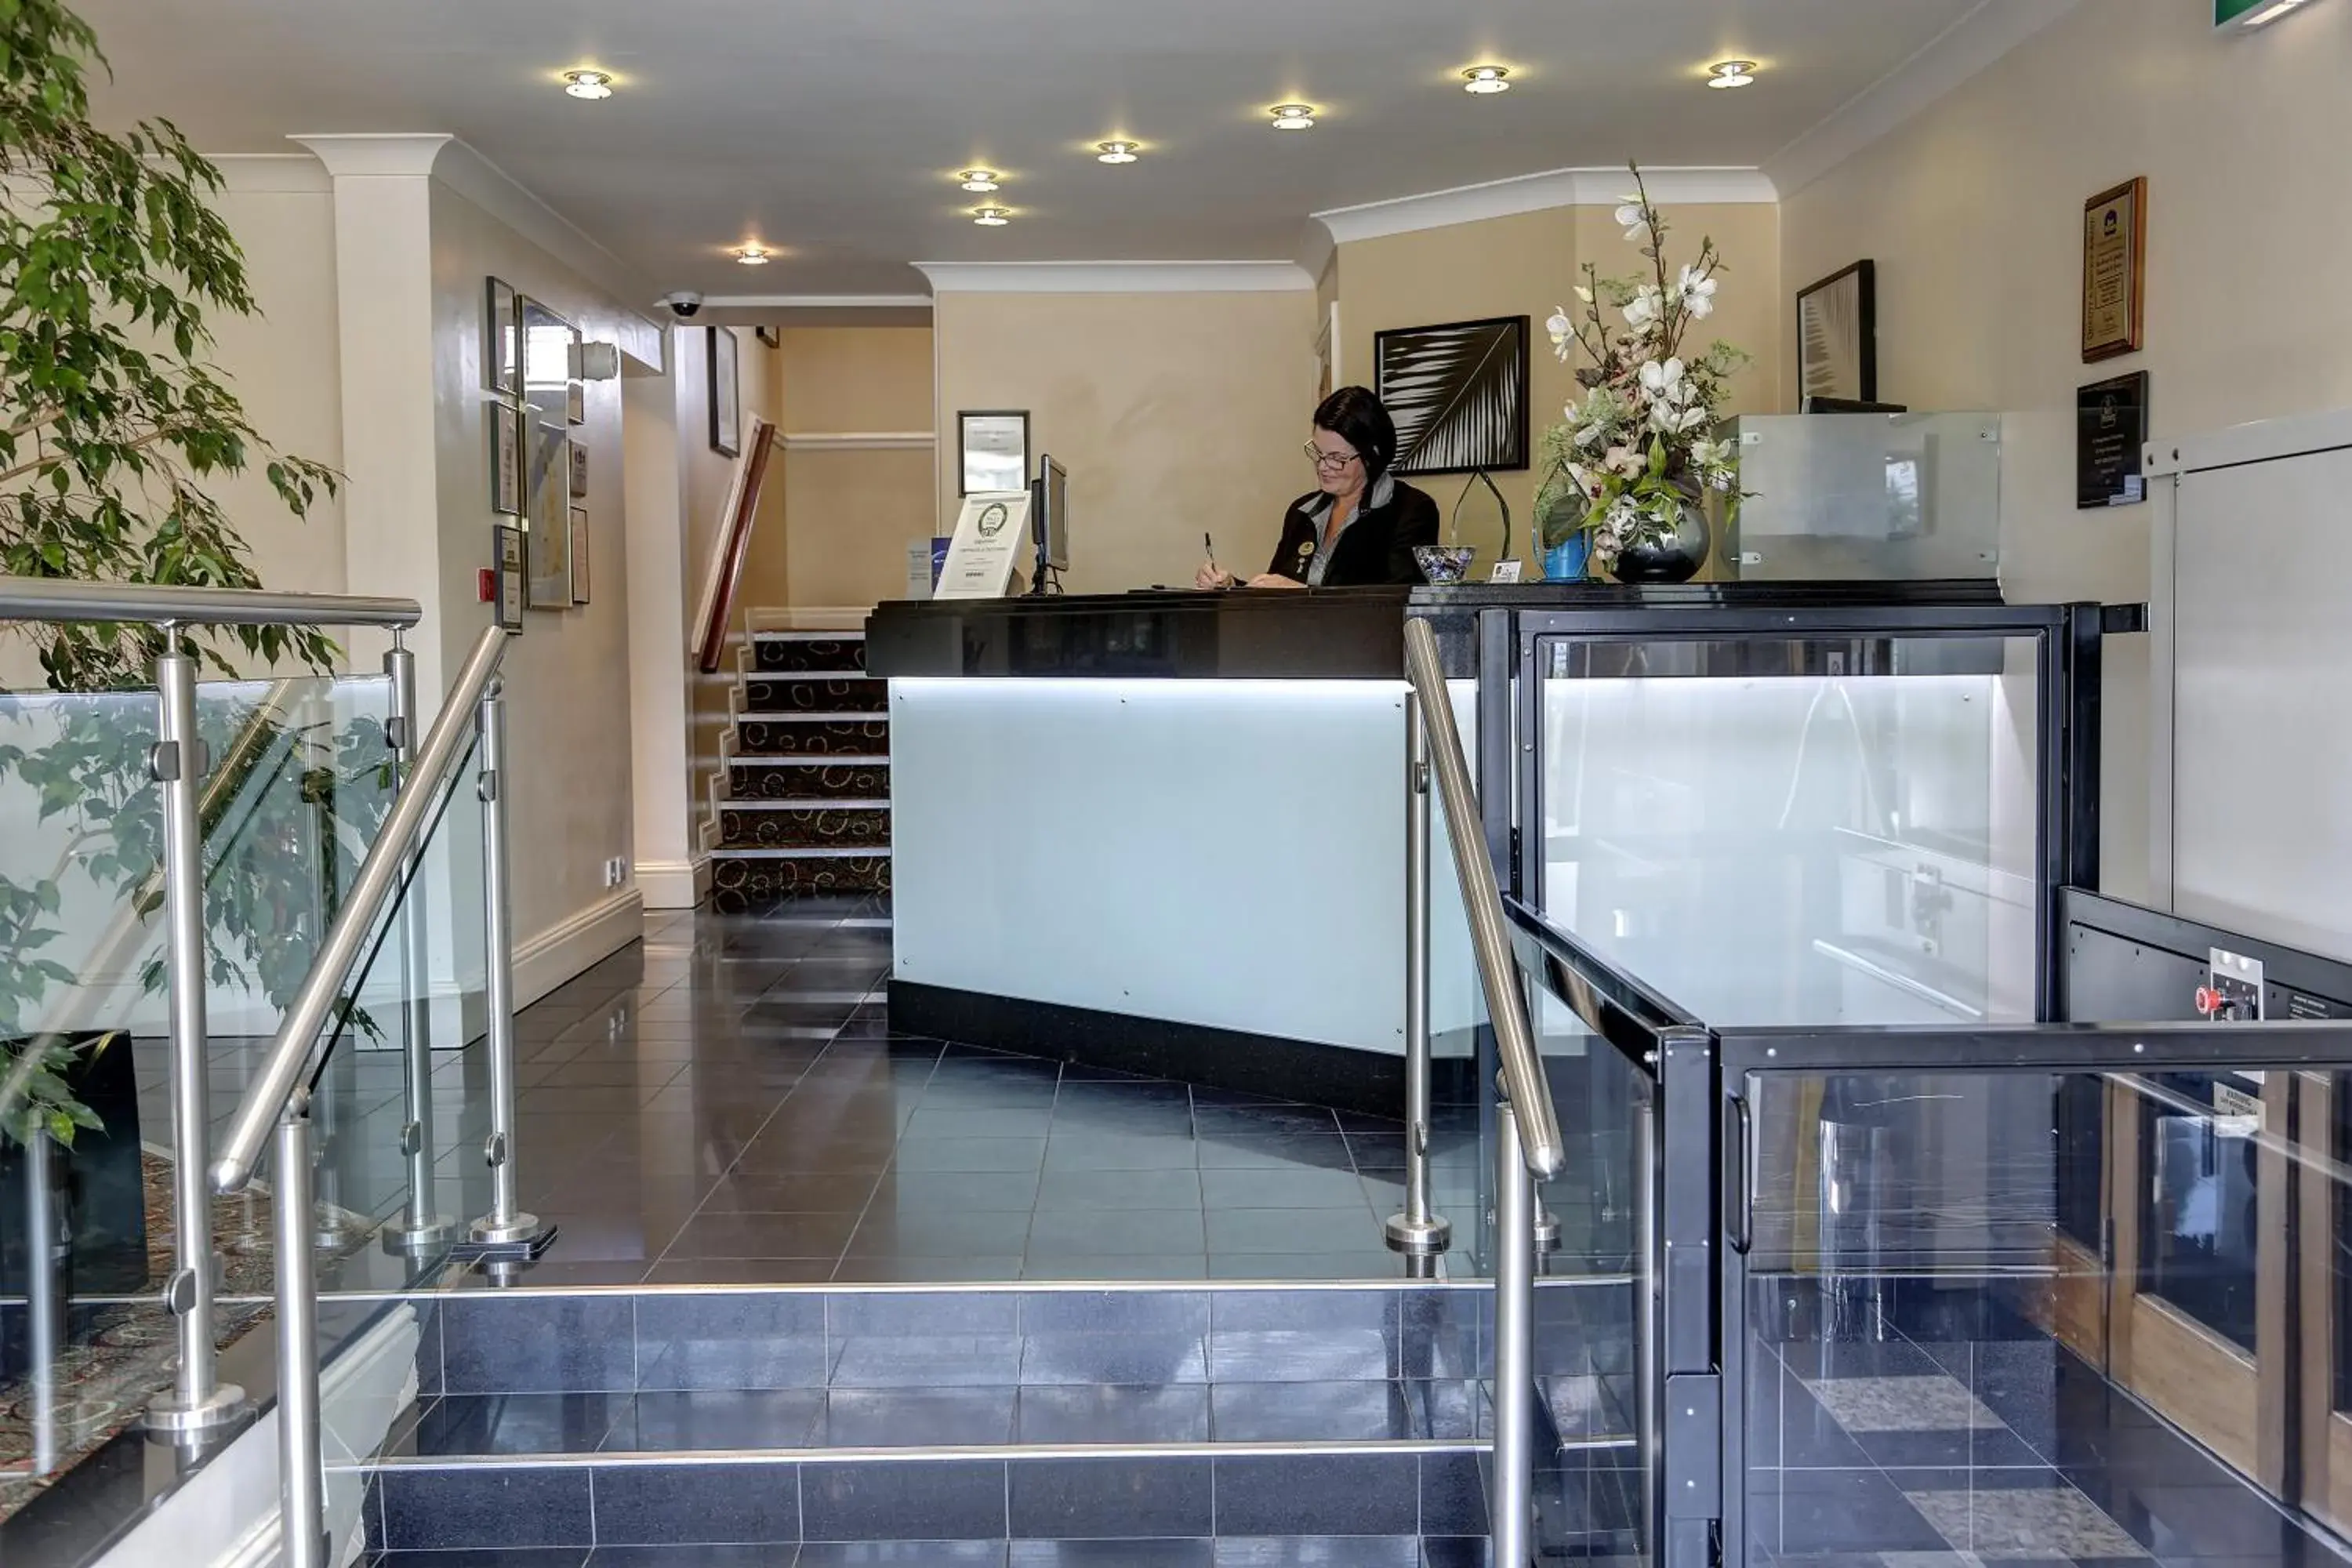 Lobby or reception, Lobby/Reception in Best Western Plus Milford Hotel